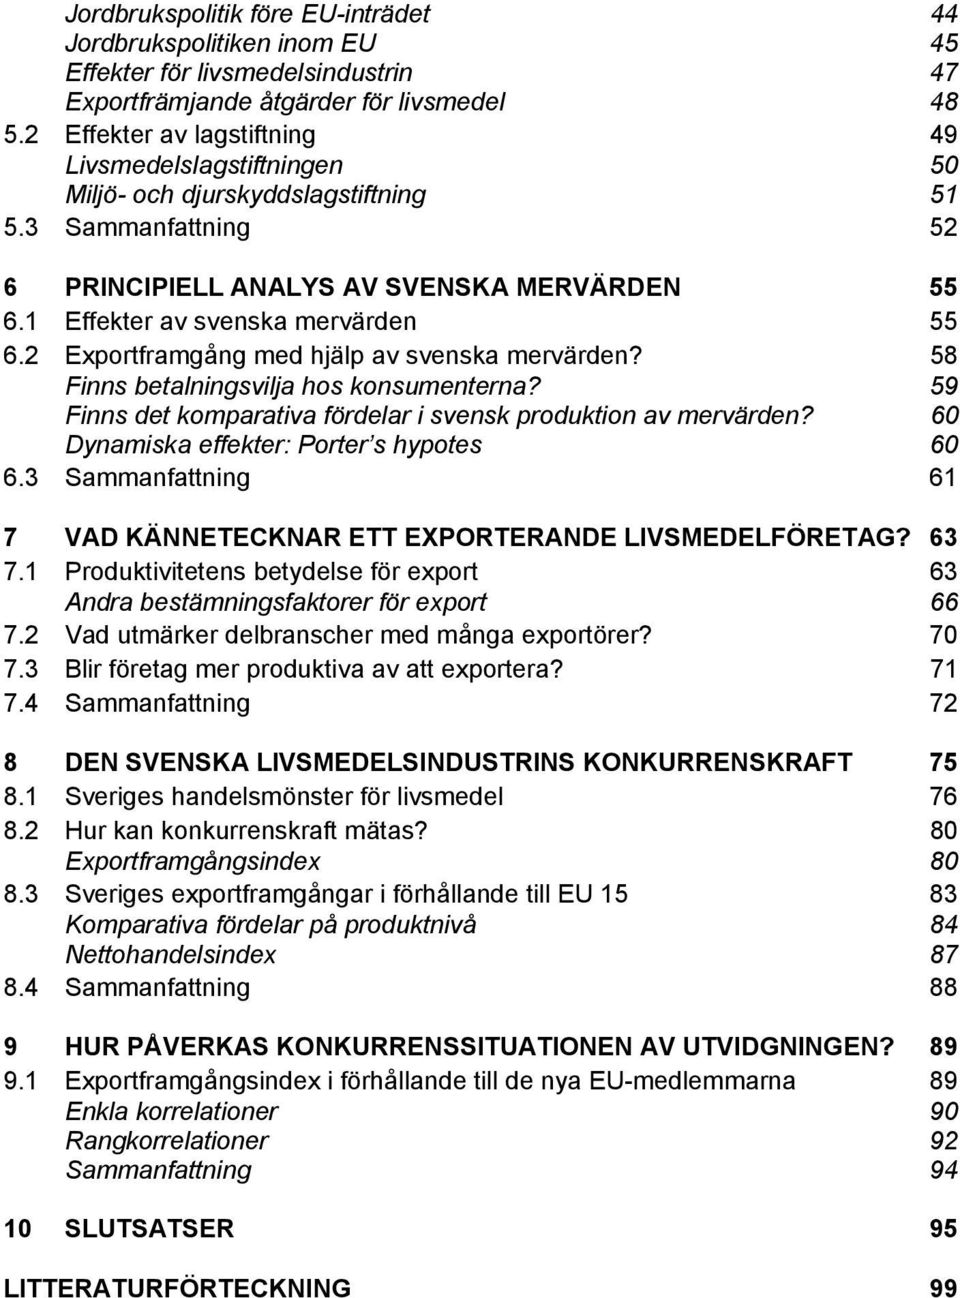 1 Effekter av svenska mervärden 55 6.2 Exportframgång med hjälp av svenska mervärden? 58 Finns betalningsvilja hos konsumenterna? 59 Finns det komparativa fördelar i svensk produktion av mervärden?